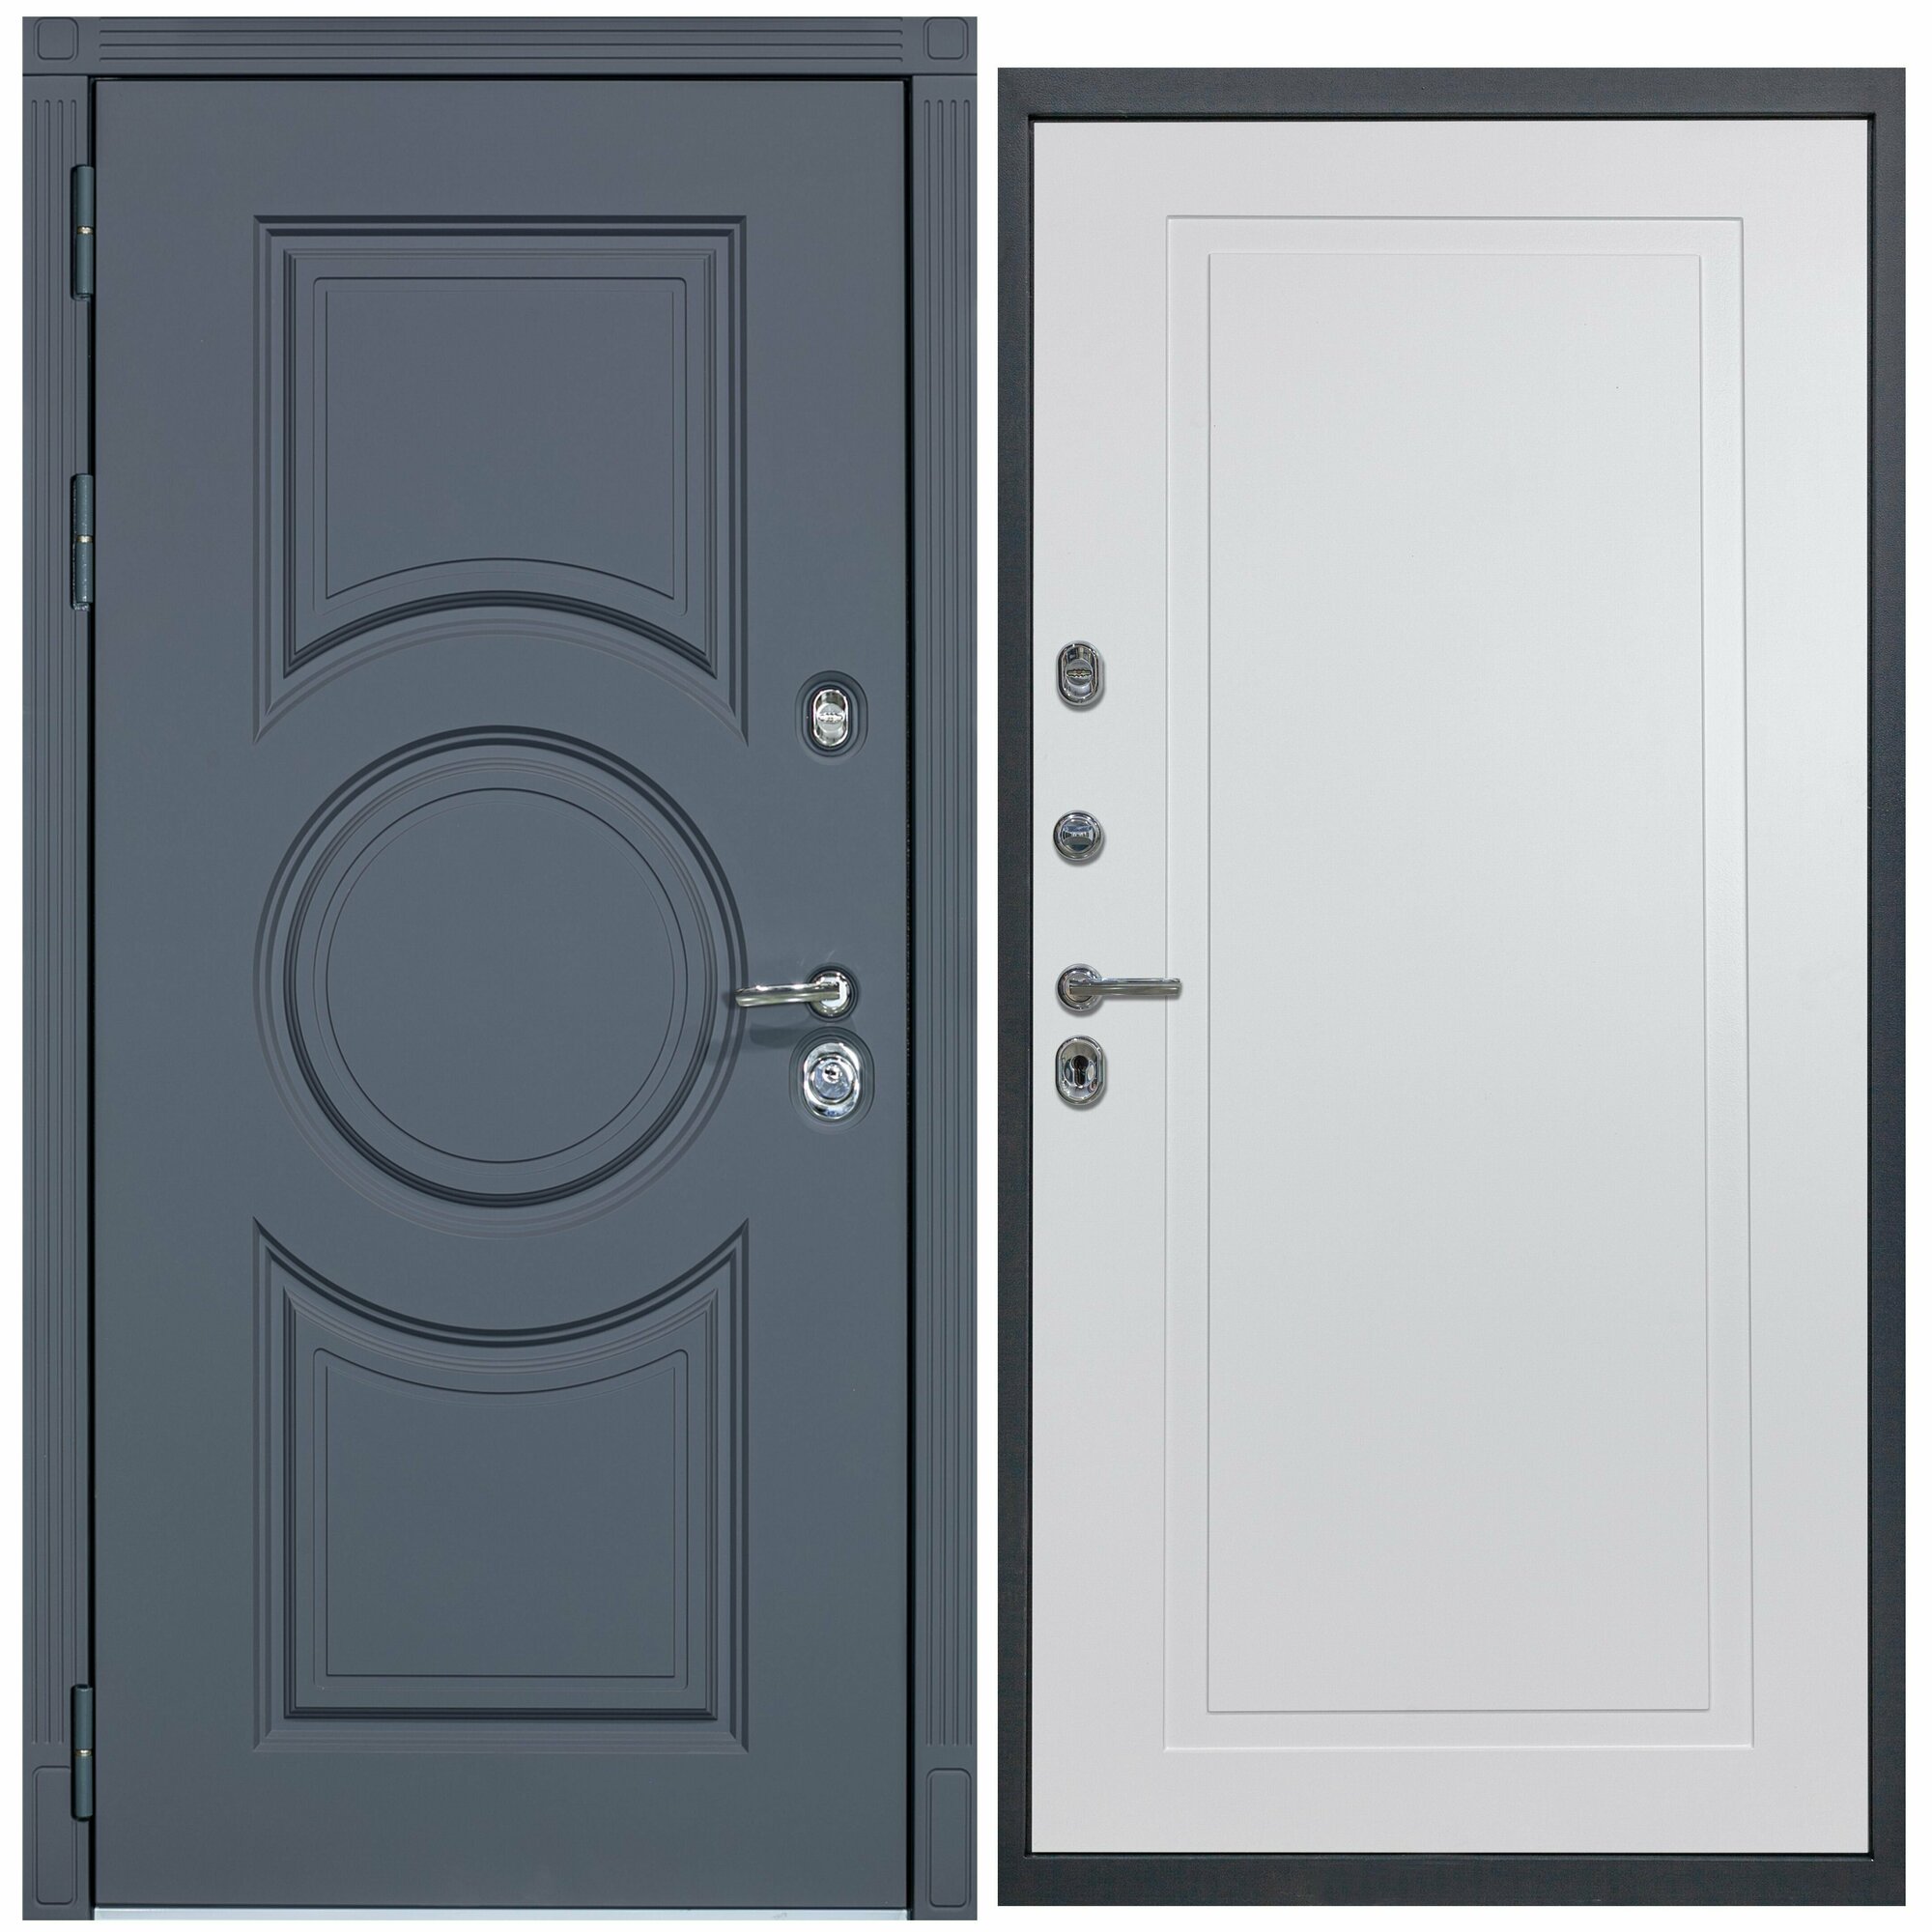 Дверь входная металлическая DIVA ДХ-30 2050x860 Левая Серый софт - Н10 Белый софт, тепло-шумоизоляция, антикоррозийная защита для квартиры